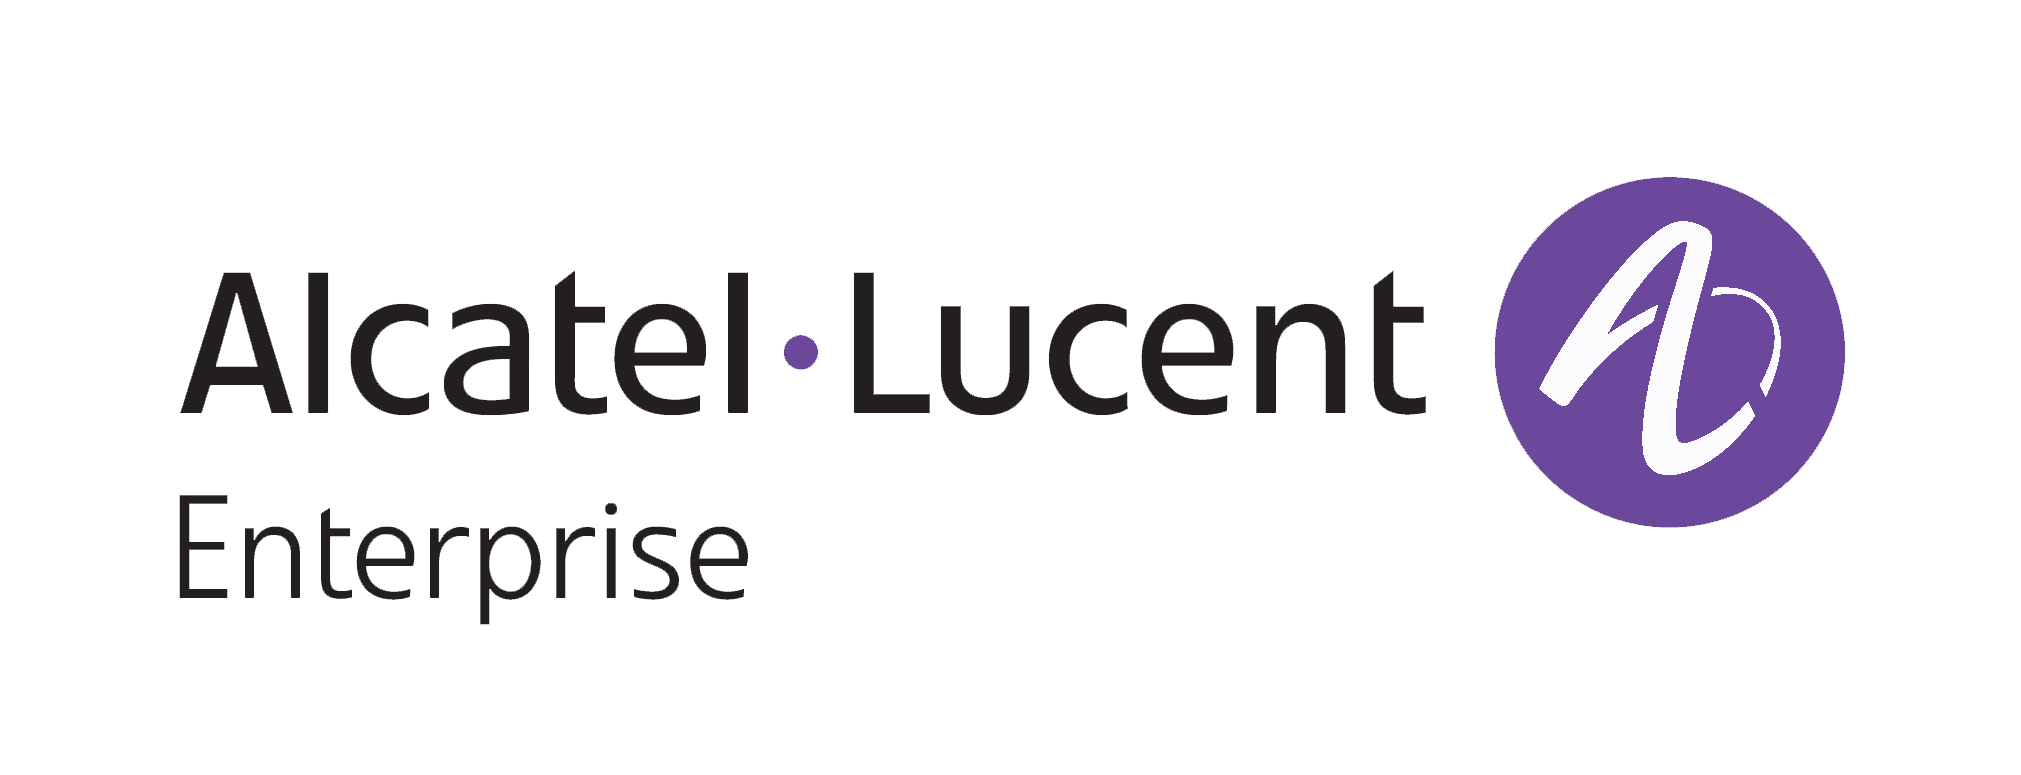 Lucent Logo - alcatel-lucent-enterprise-logo - ICT Value-Added Distributor (VAD)